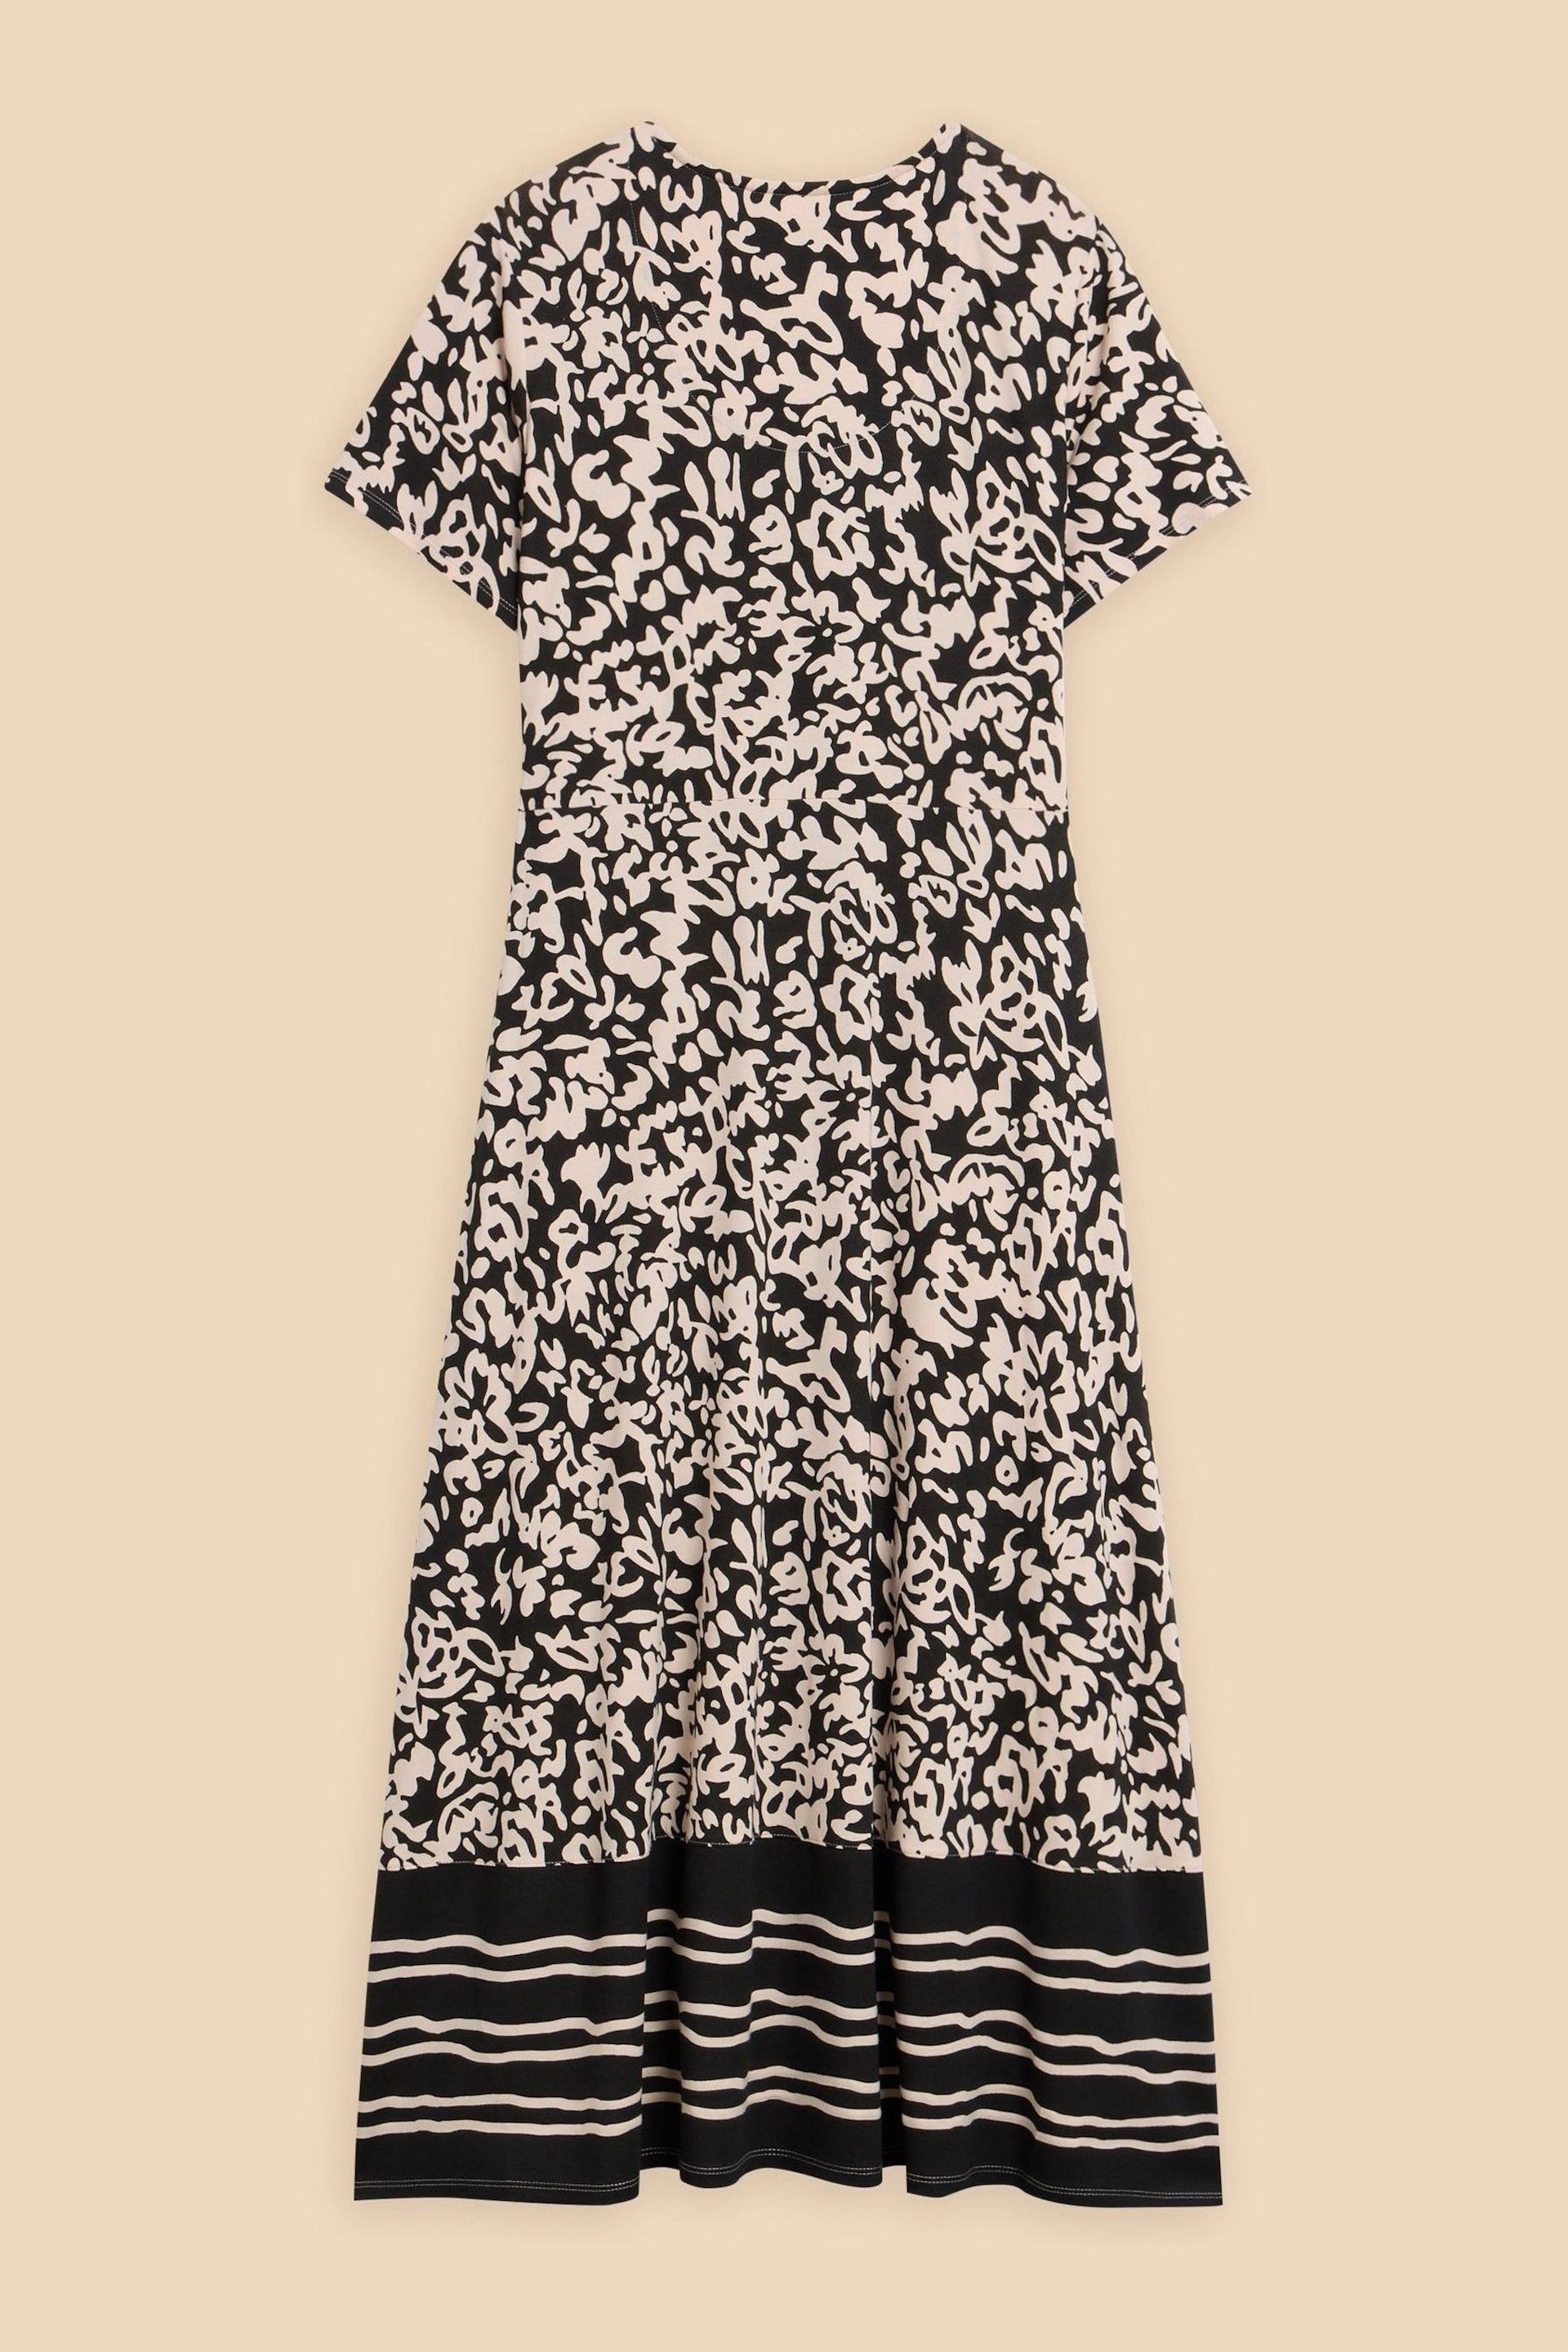 White Stuff Black Jersey Amelia Dress - Image 6 of 7